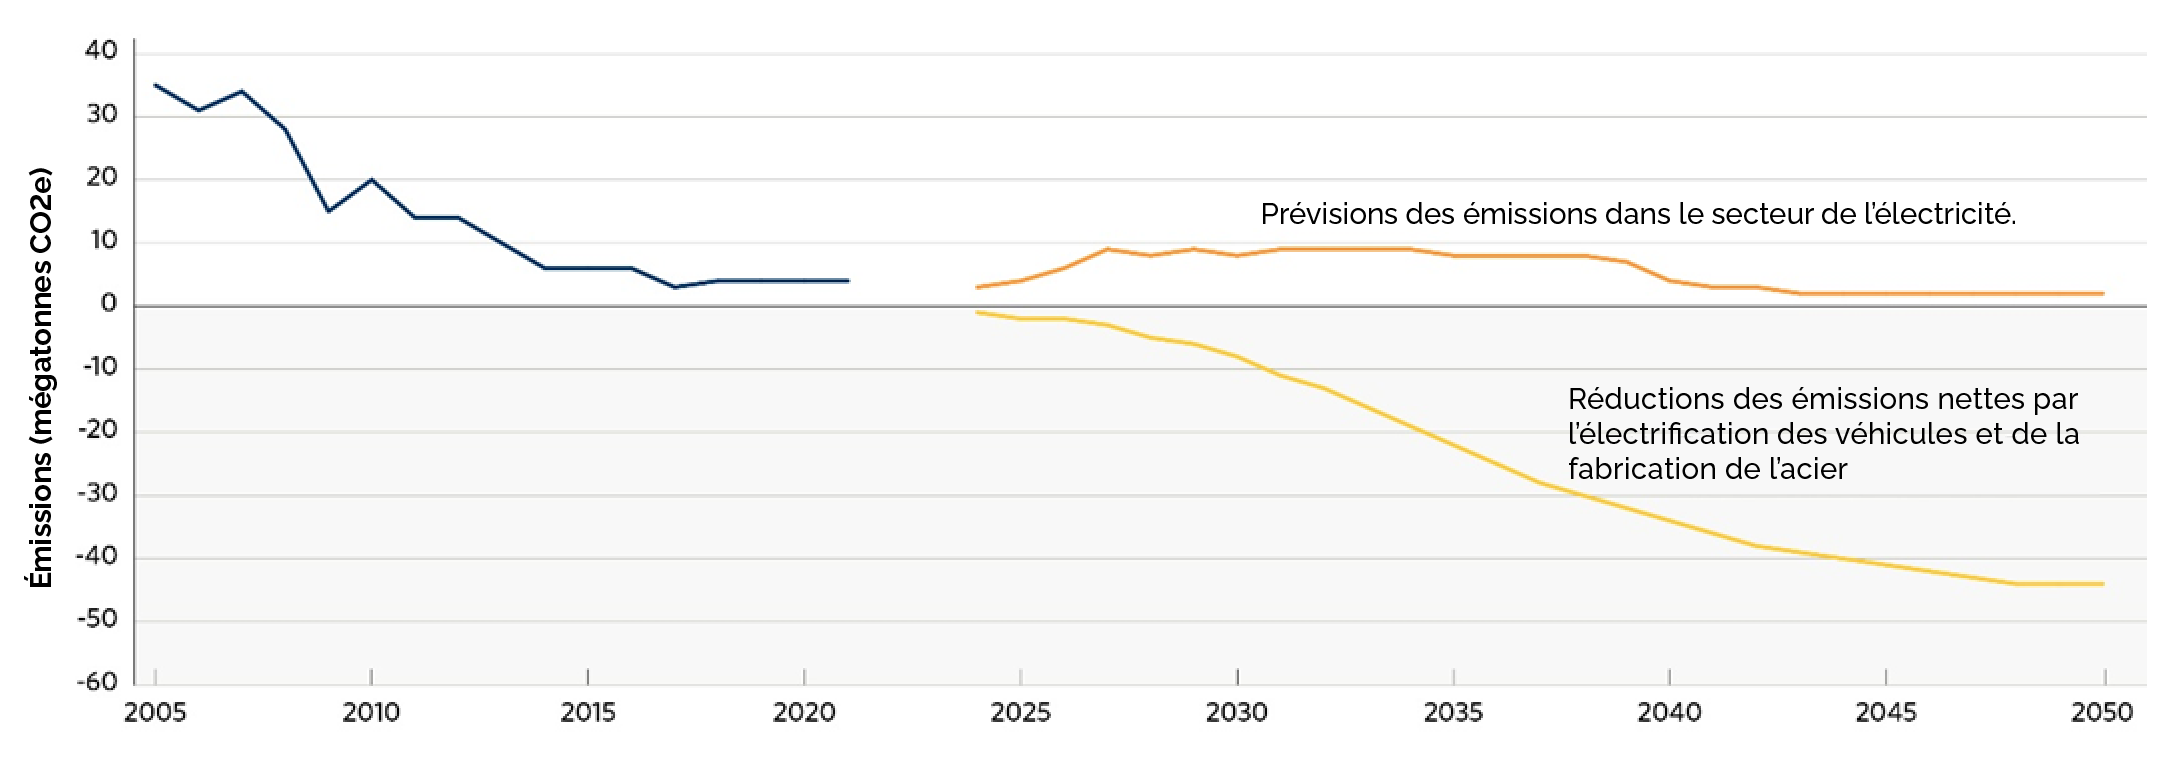 Graphique linéaire prévoyant les émissions du secteur de l'électricité et les réductions nettes des émissions d'ici 2050. Les émissions diminuent de manière significative.